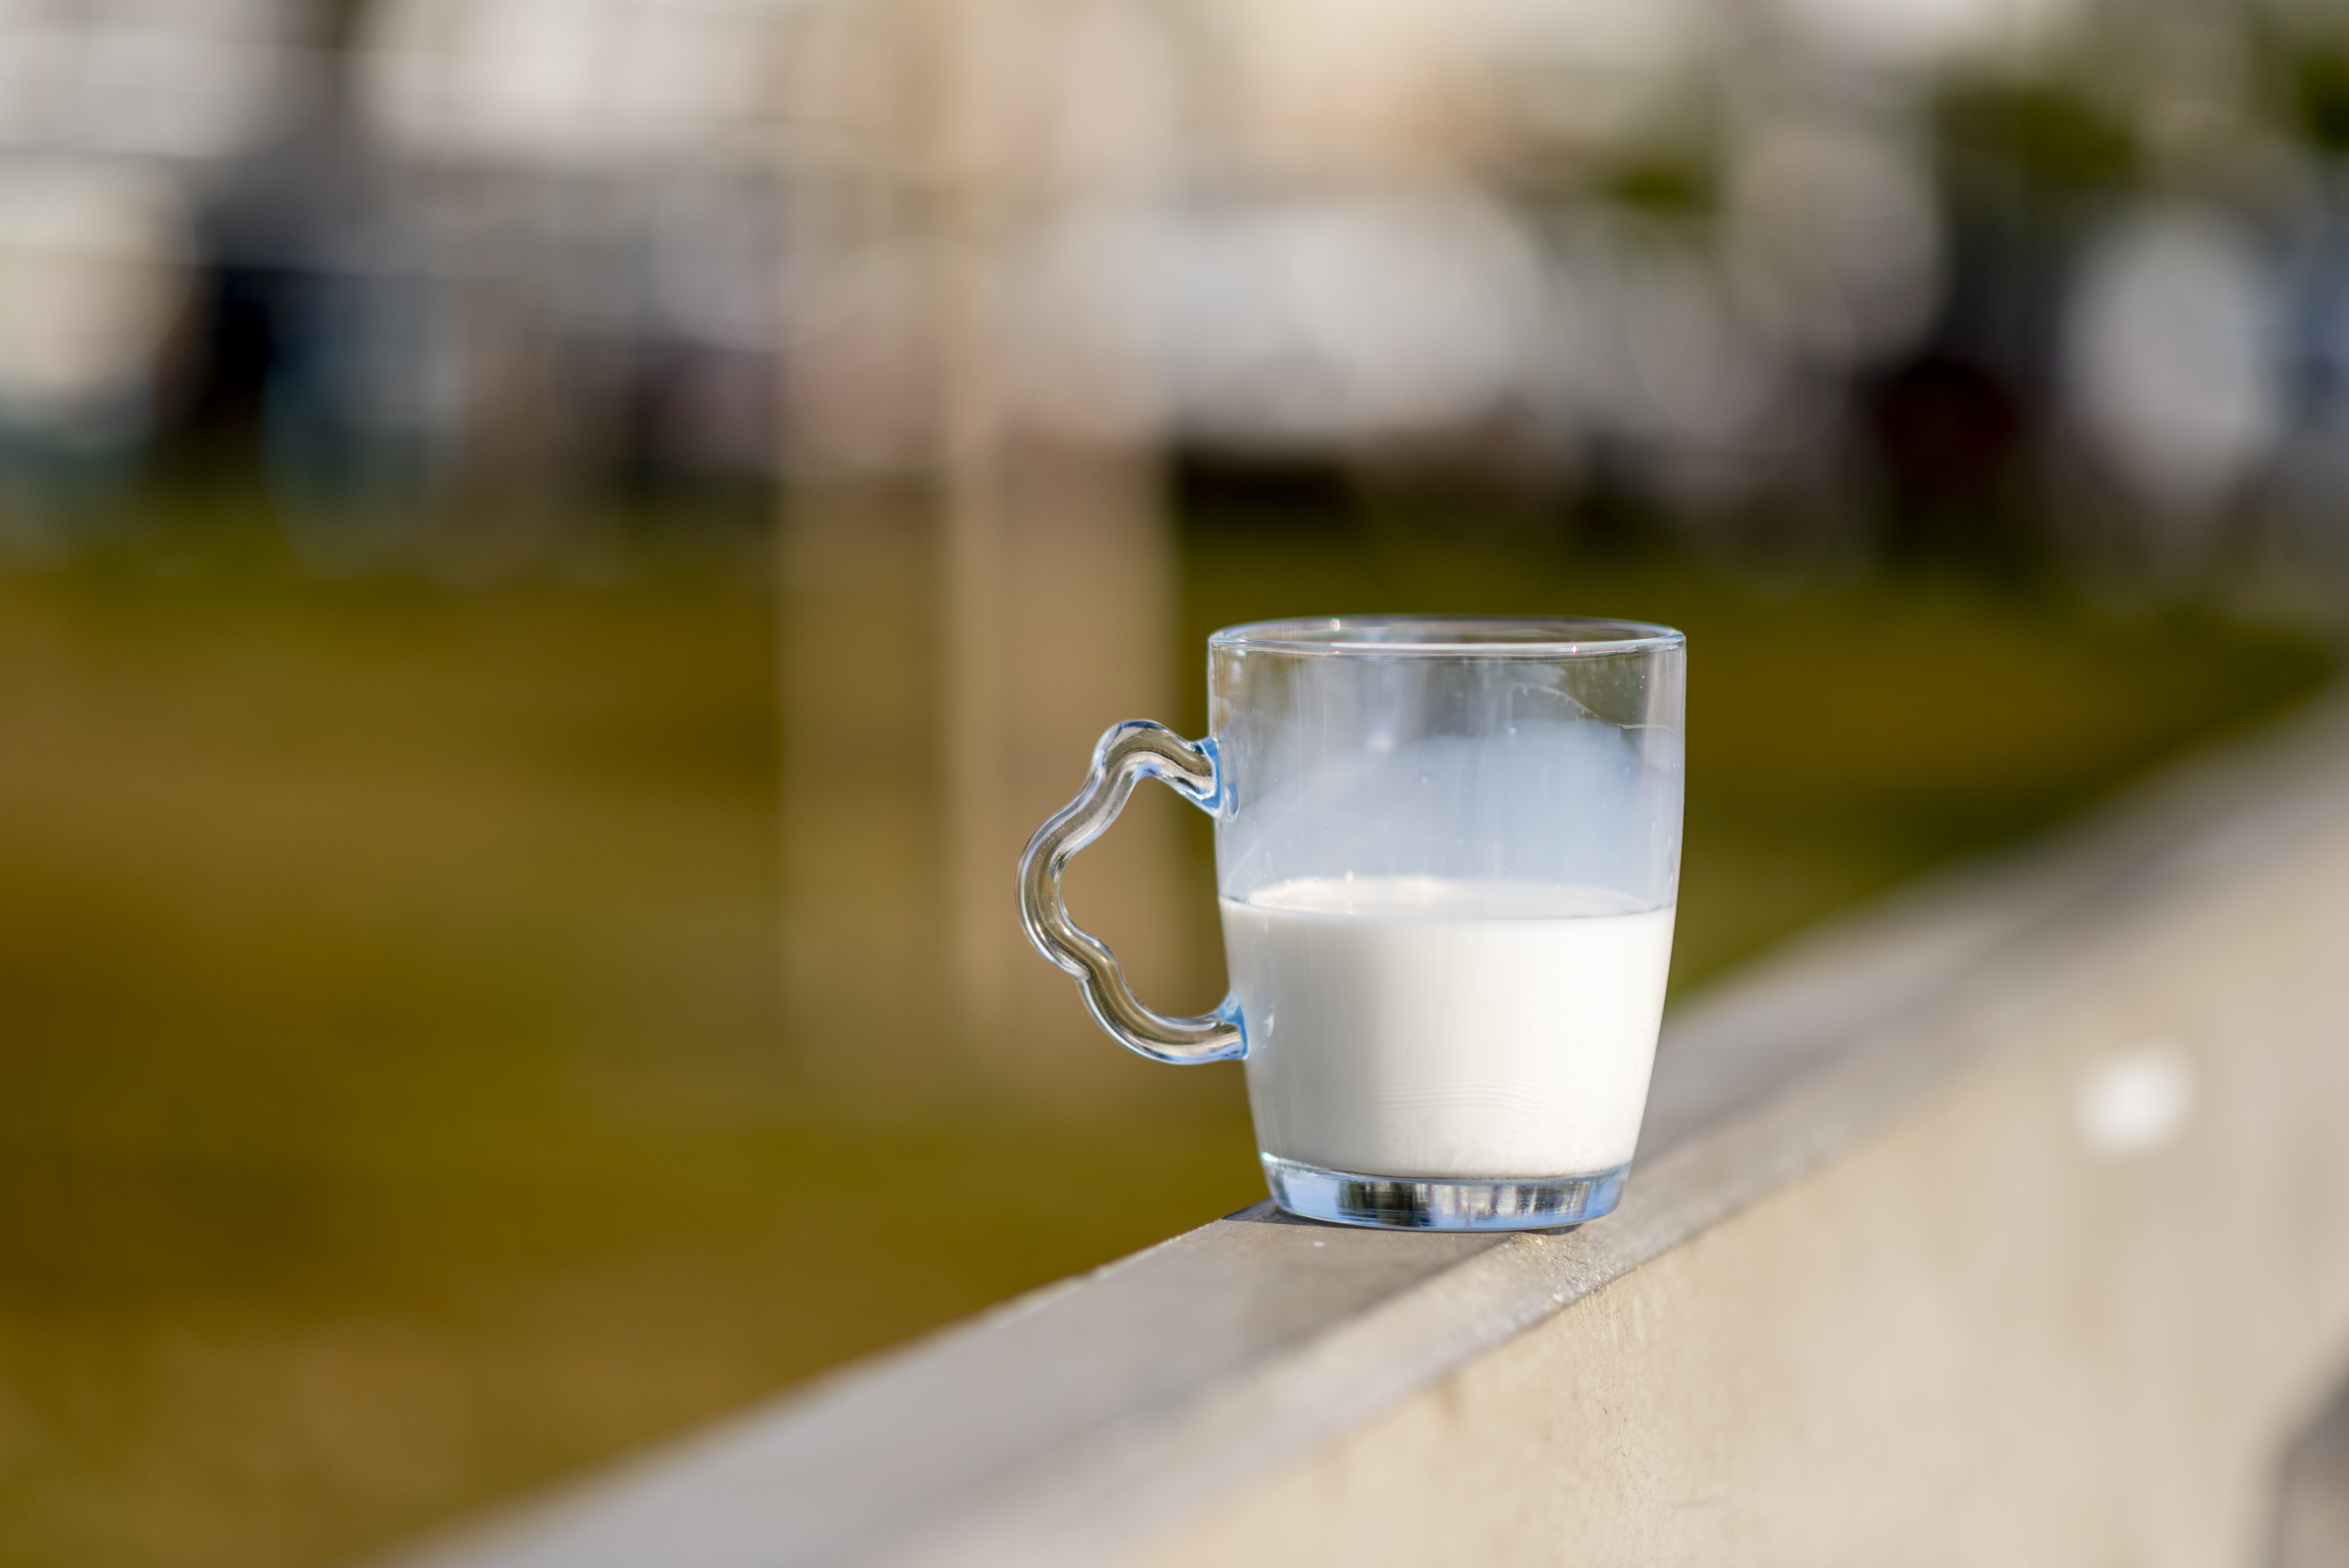 Der Trend hin zu Pflanzenmilch statt herkömmlicher Kuhmilch hat dazu geführt, dass Frauen nicht genügend Kalzium zu sich nehmen